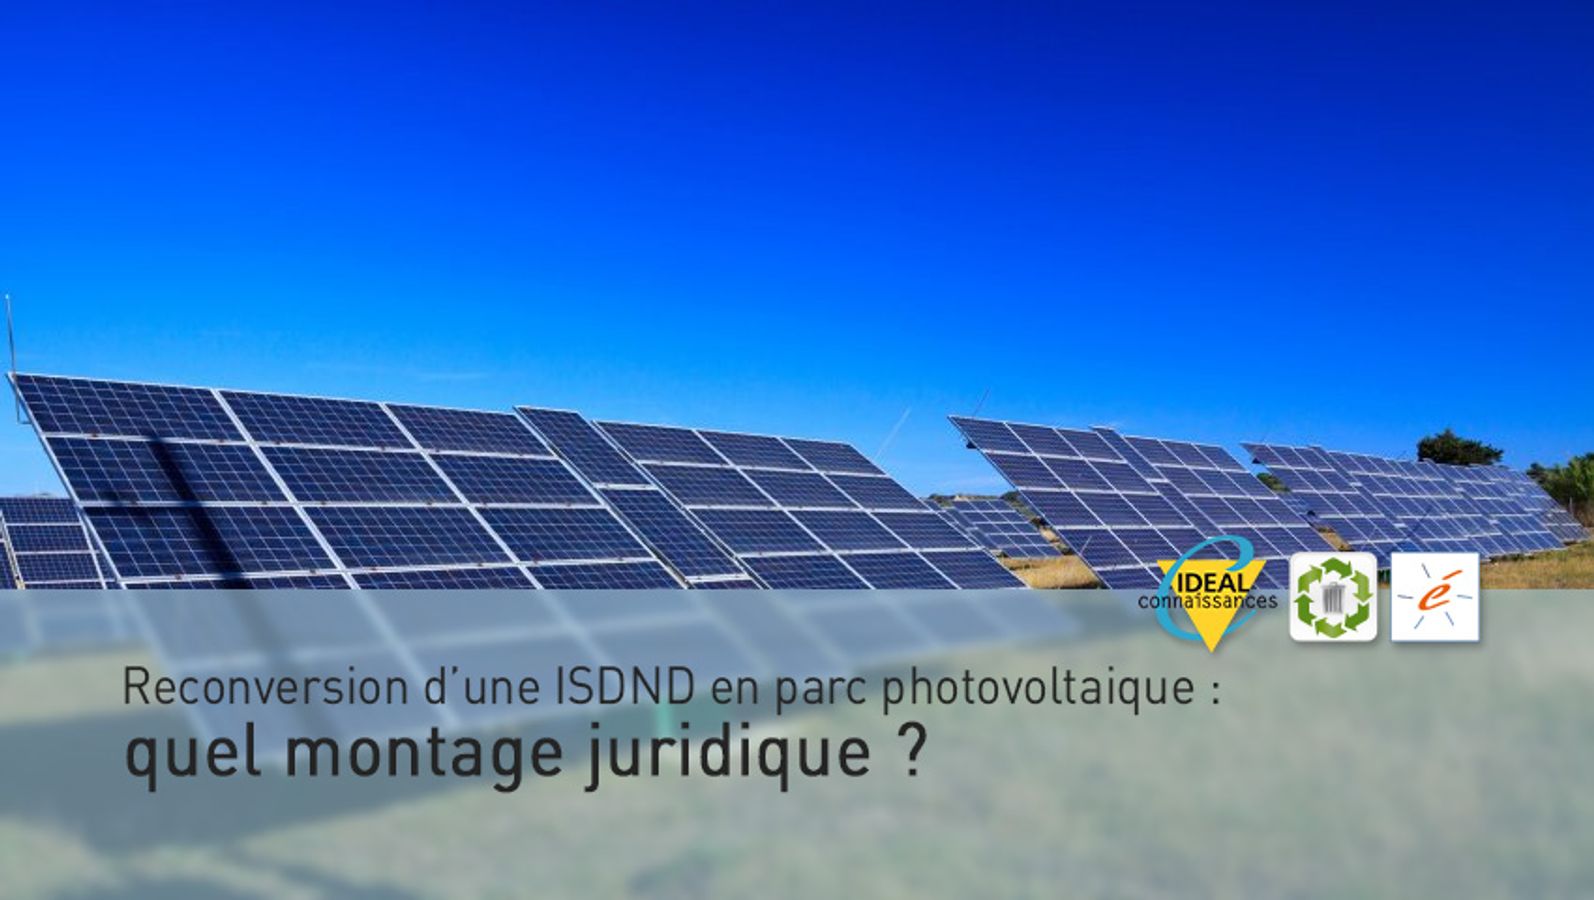 Reconversion d’une ISDND en parc photovoltaique : quel montage juridique ?